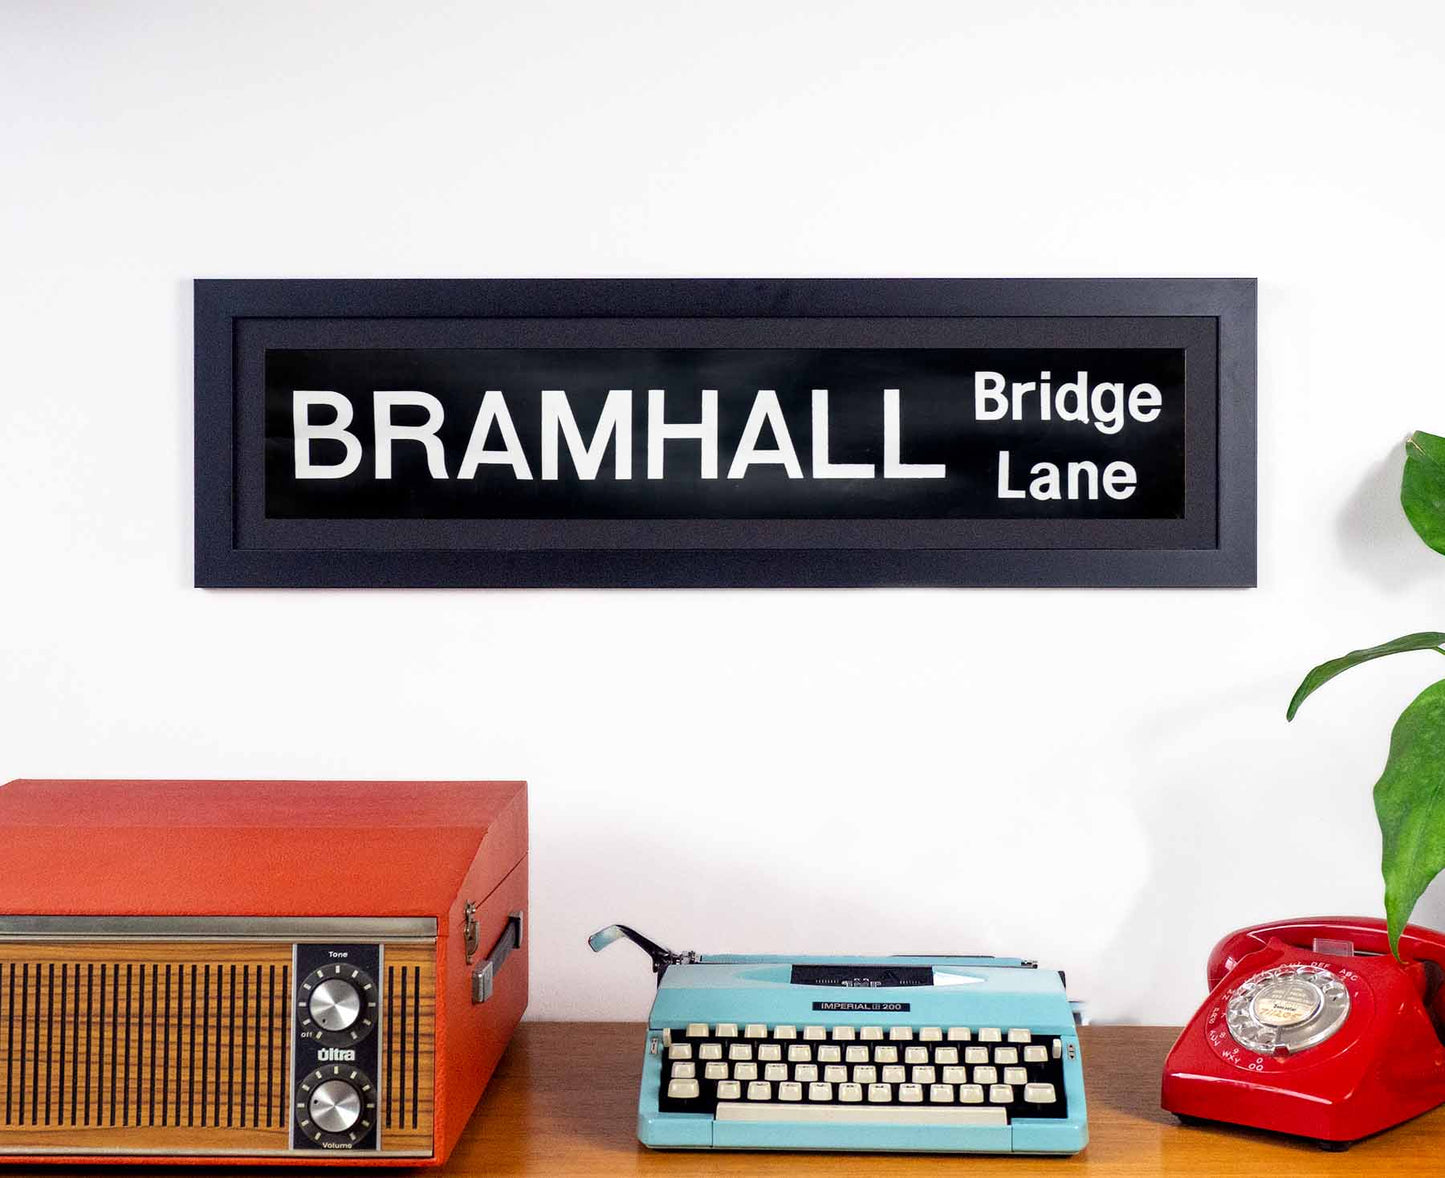 Bramhall Bridge Lane 1970s Framed Bus Blind